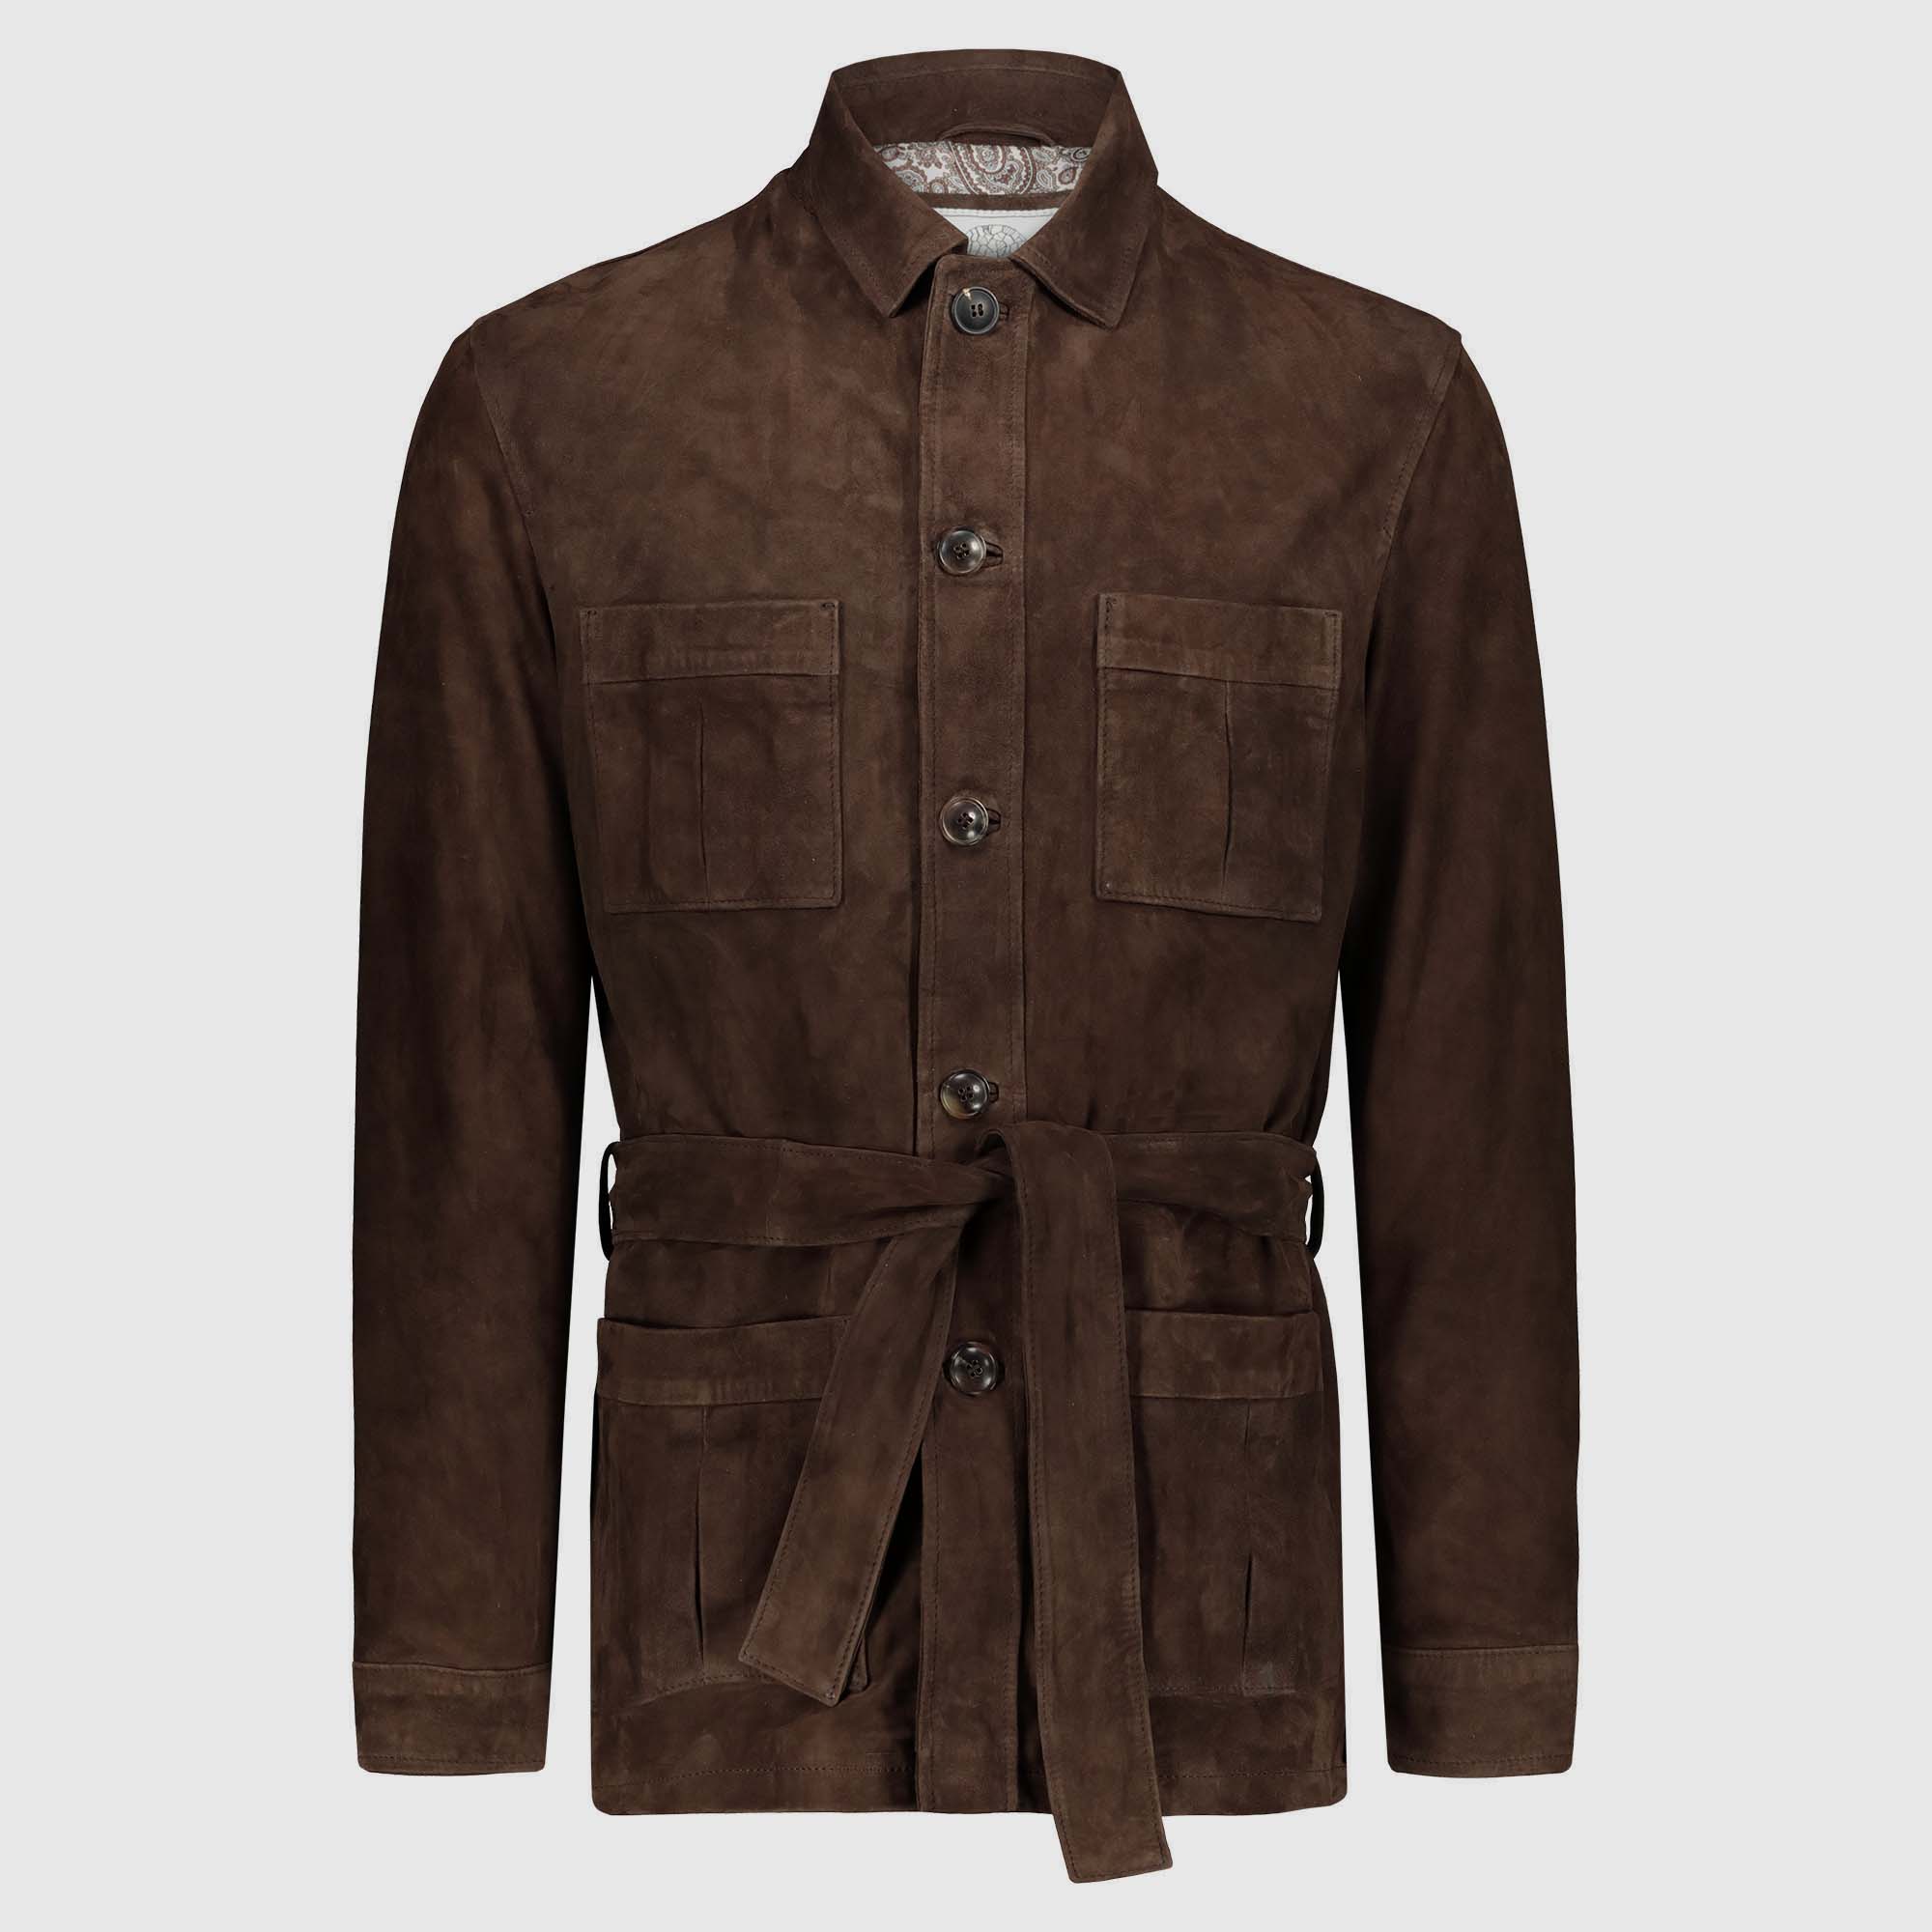 2874円 海外並行輸入正規品 Vtg brown leather safari jacket 本革 雰囲気系